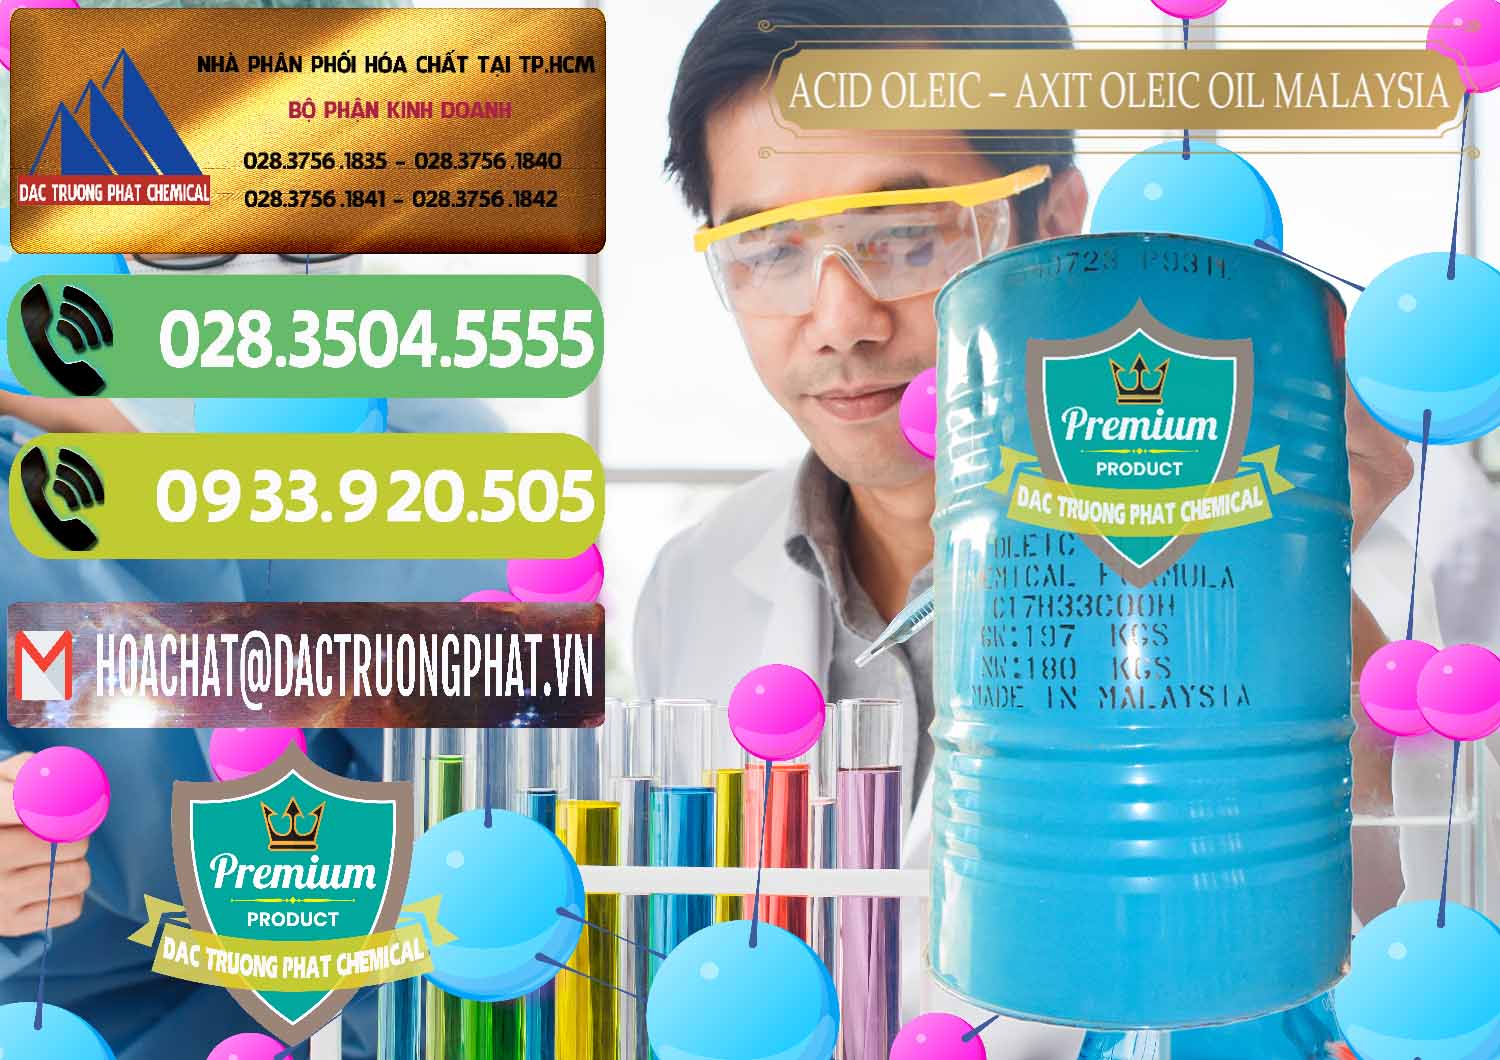 Nơi bán ( cung cấp ) Acid Oleic – Axit Oleic Oil Malaysia - 0013 - Nơi chuyên cung cấp ( kinh doanh ) hóa chất tại TP.HCM - hoachatmientay.vn